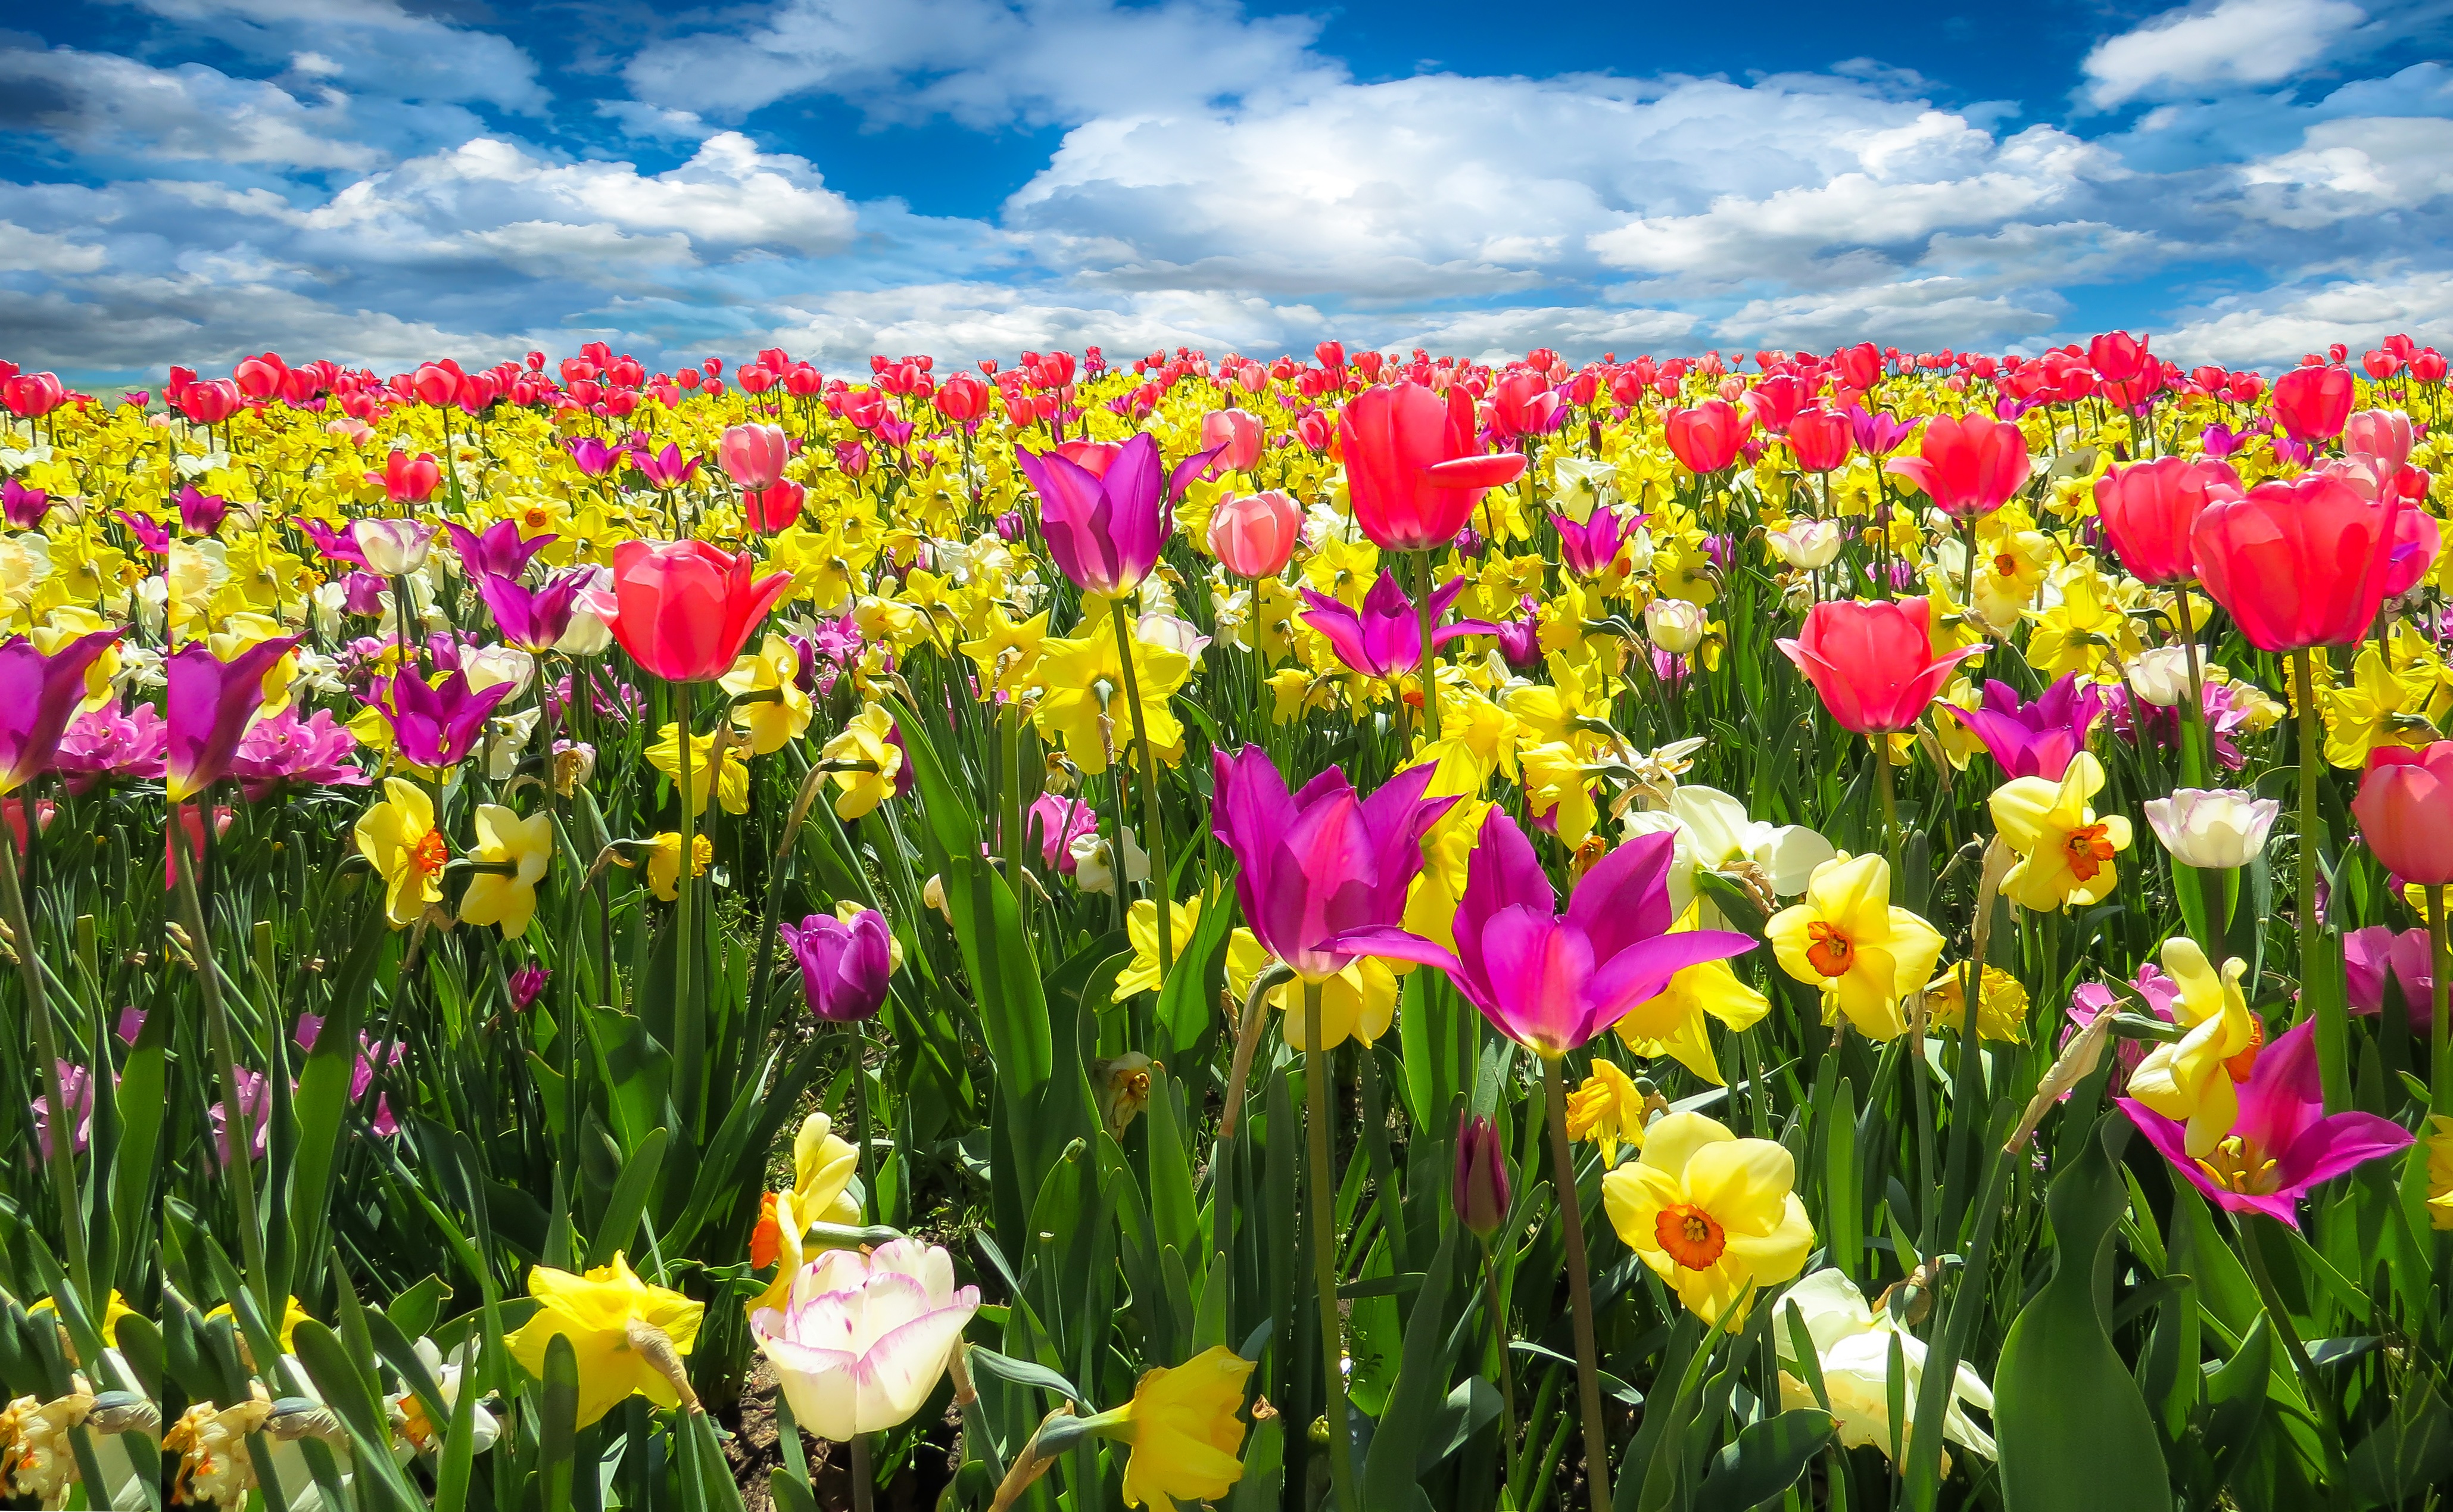 Обои флора поле тюльпаны на рабочий стол